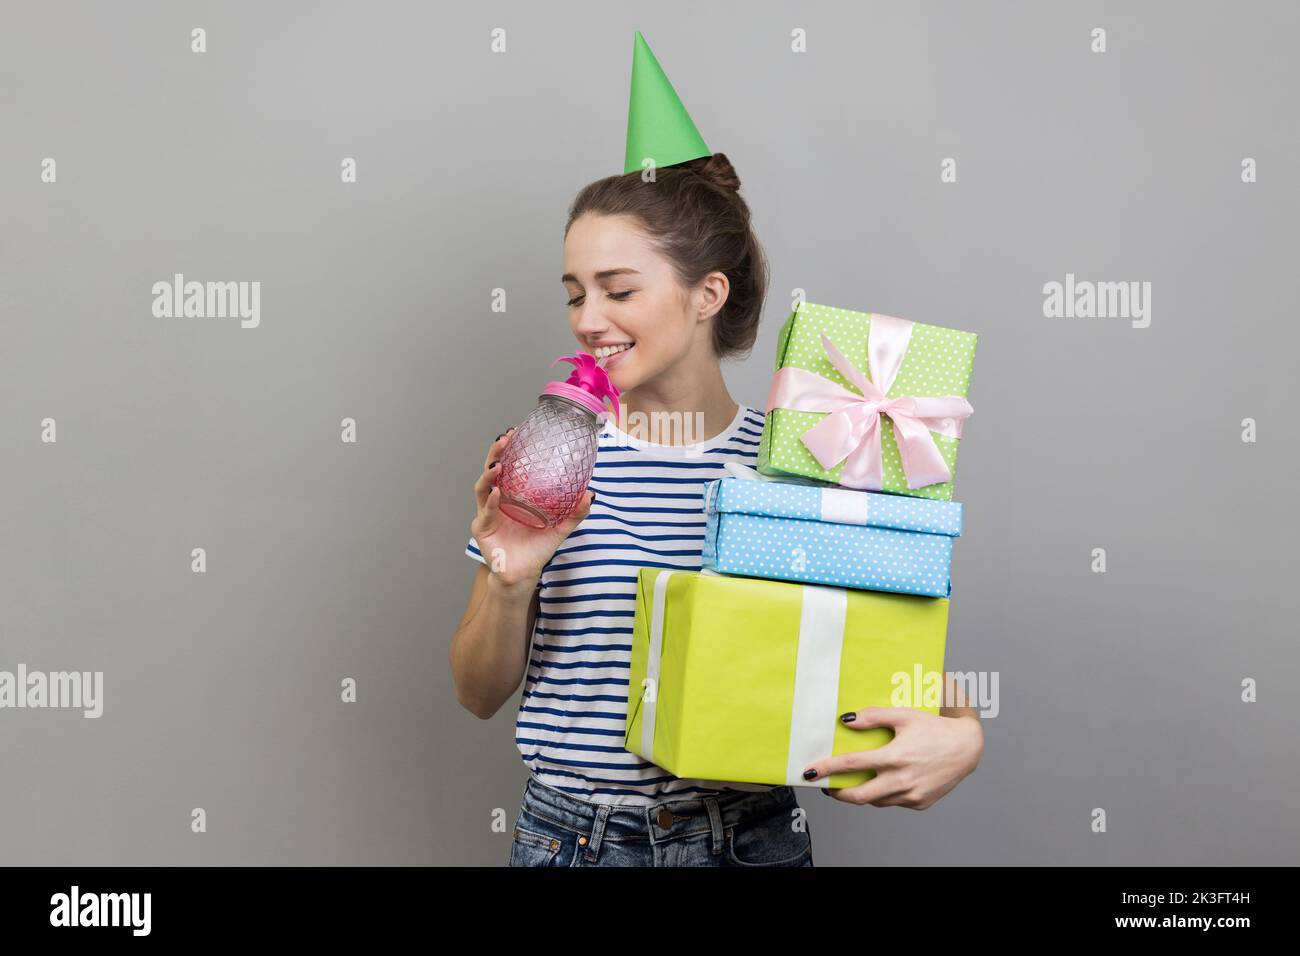 Retrato de una mujer positiva festiva con camiseta a rayas y cono de fiesta, sosteniendo la pila de cajas de regalo, bebiendo cóctel, disfrutando de la fiesta de cumpleaños. Estudio de interior grabado aislado sobre fondo gris. Foto de stock